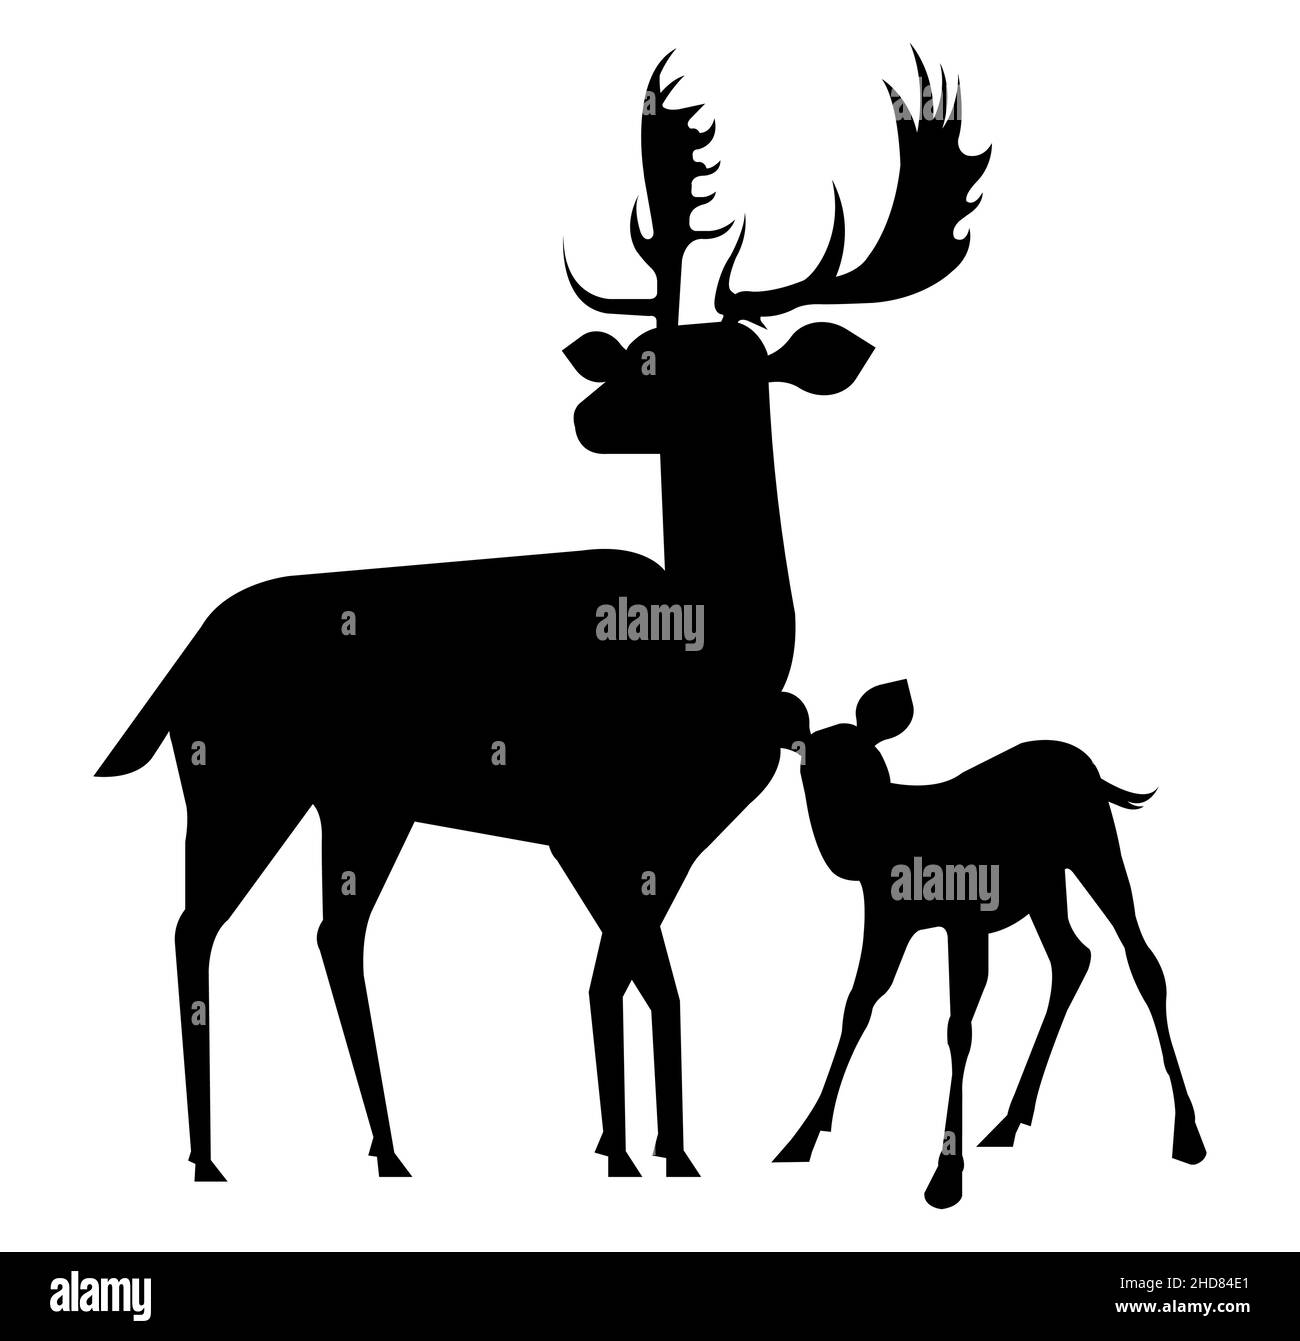 Illustrazione isolata del vettore della famiglia dei cervi su sfondo bianco. Mama dei cervi e silhouette isolate. Illustrazione Vettoriale